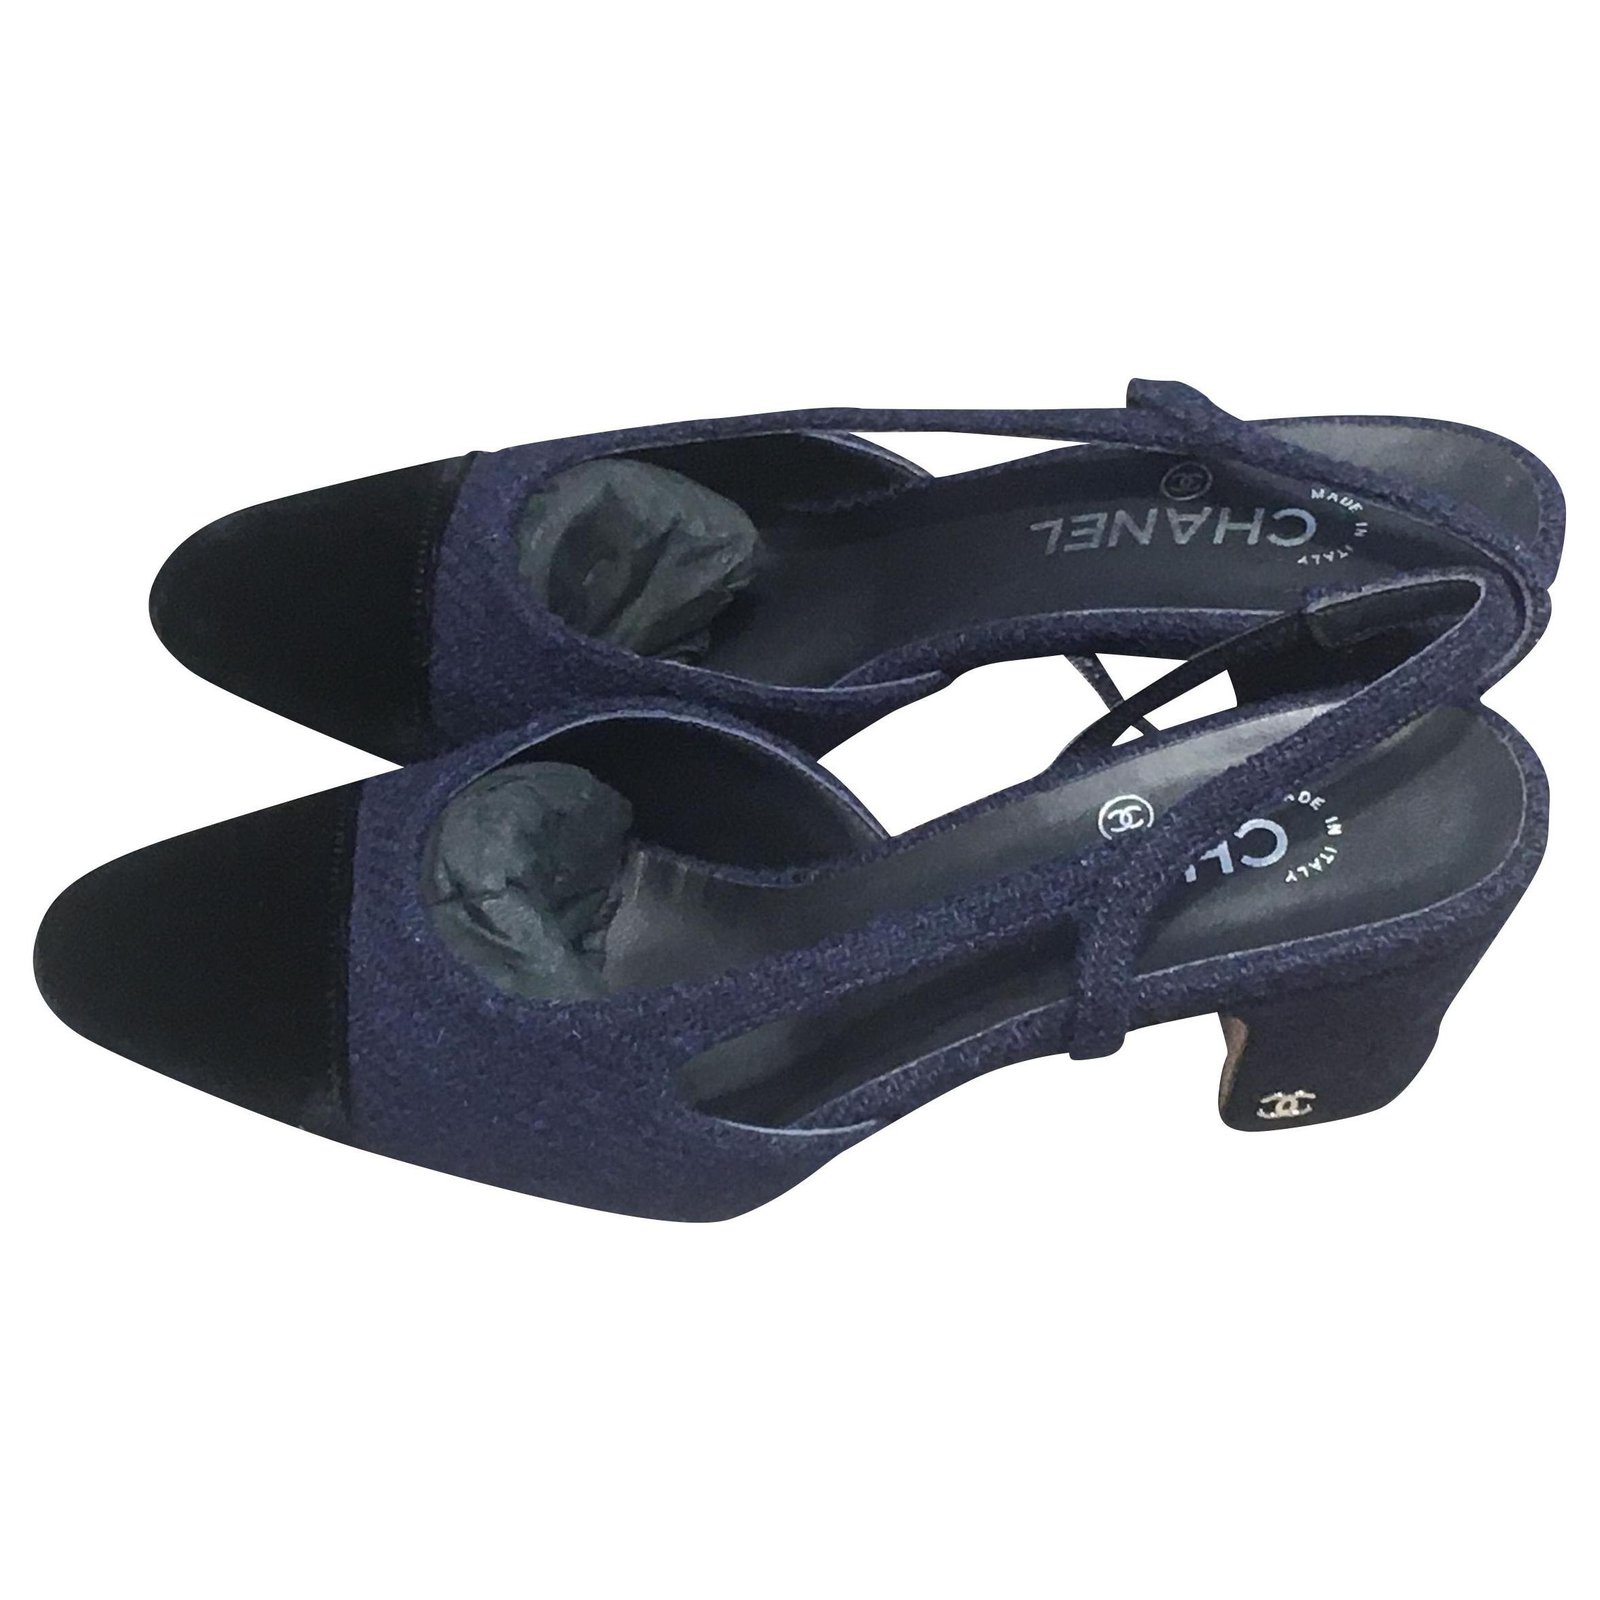 Slingback tweed sandal Chanel Navy size 38 EU in Tweed - 30167838